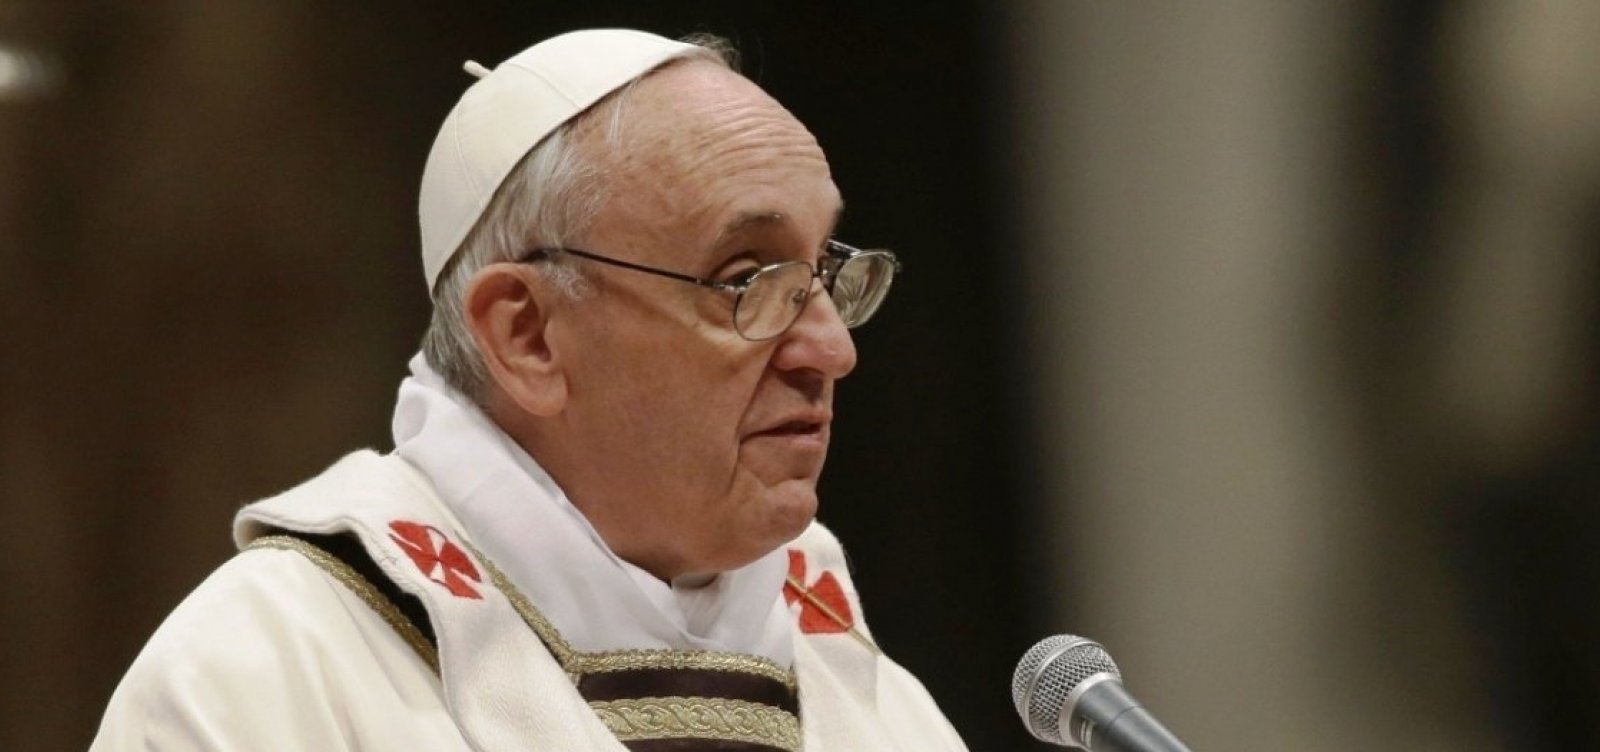 Em carta a católicos, papa Francisco condena crimes sexuais na igreja